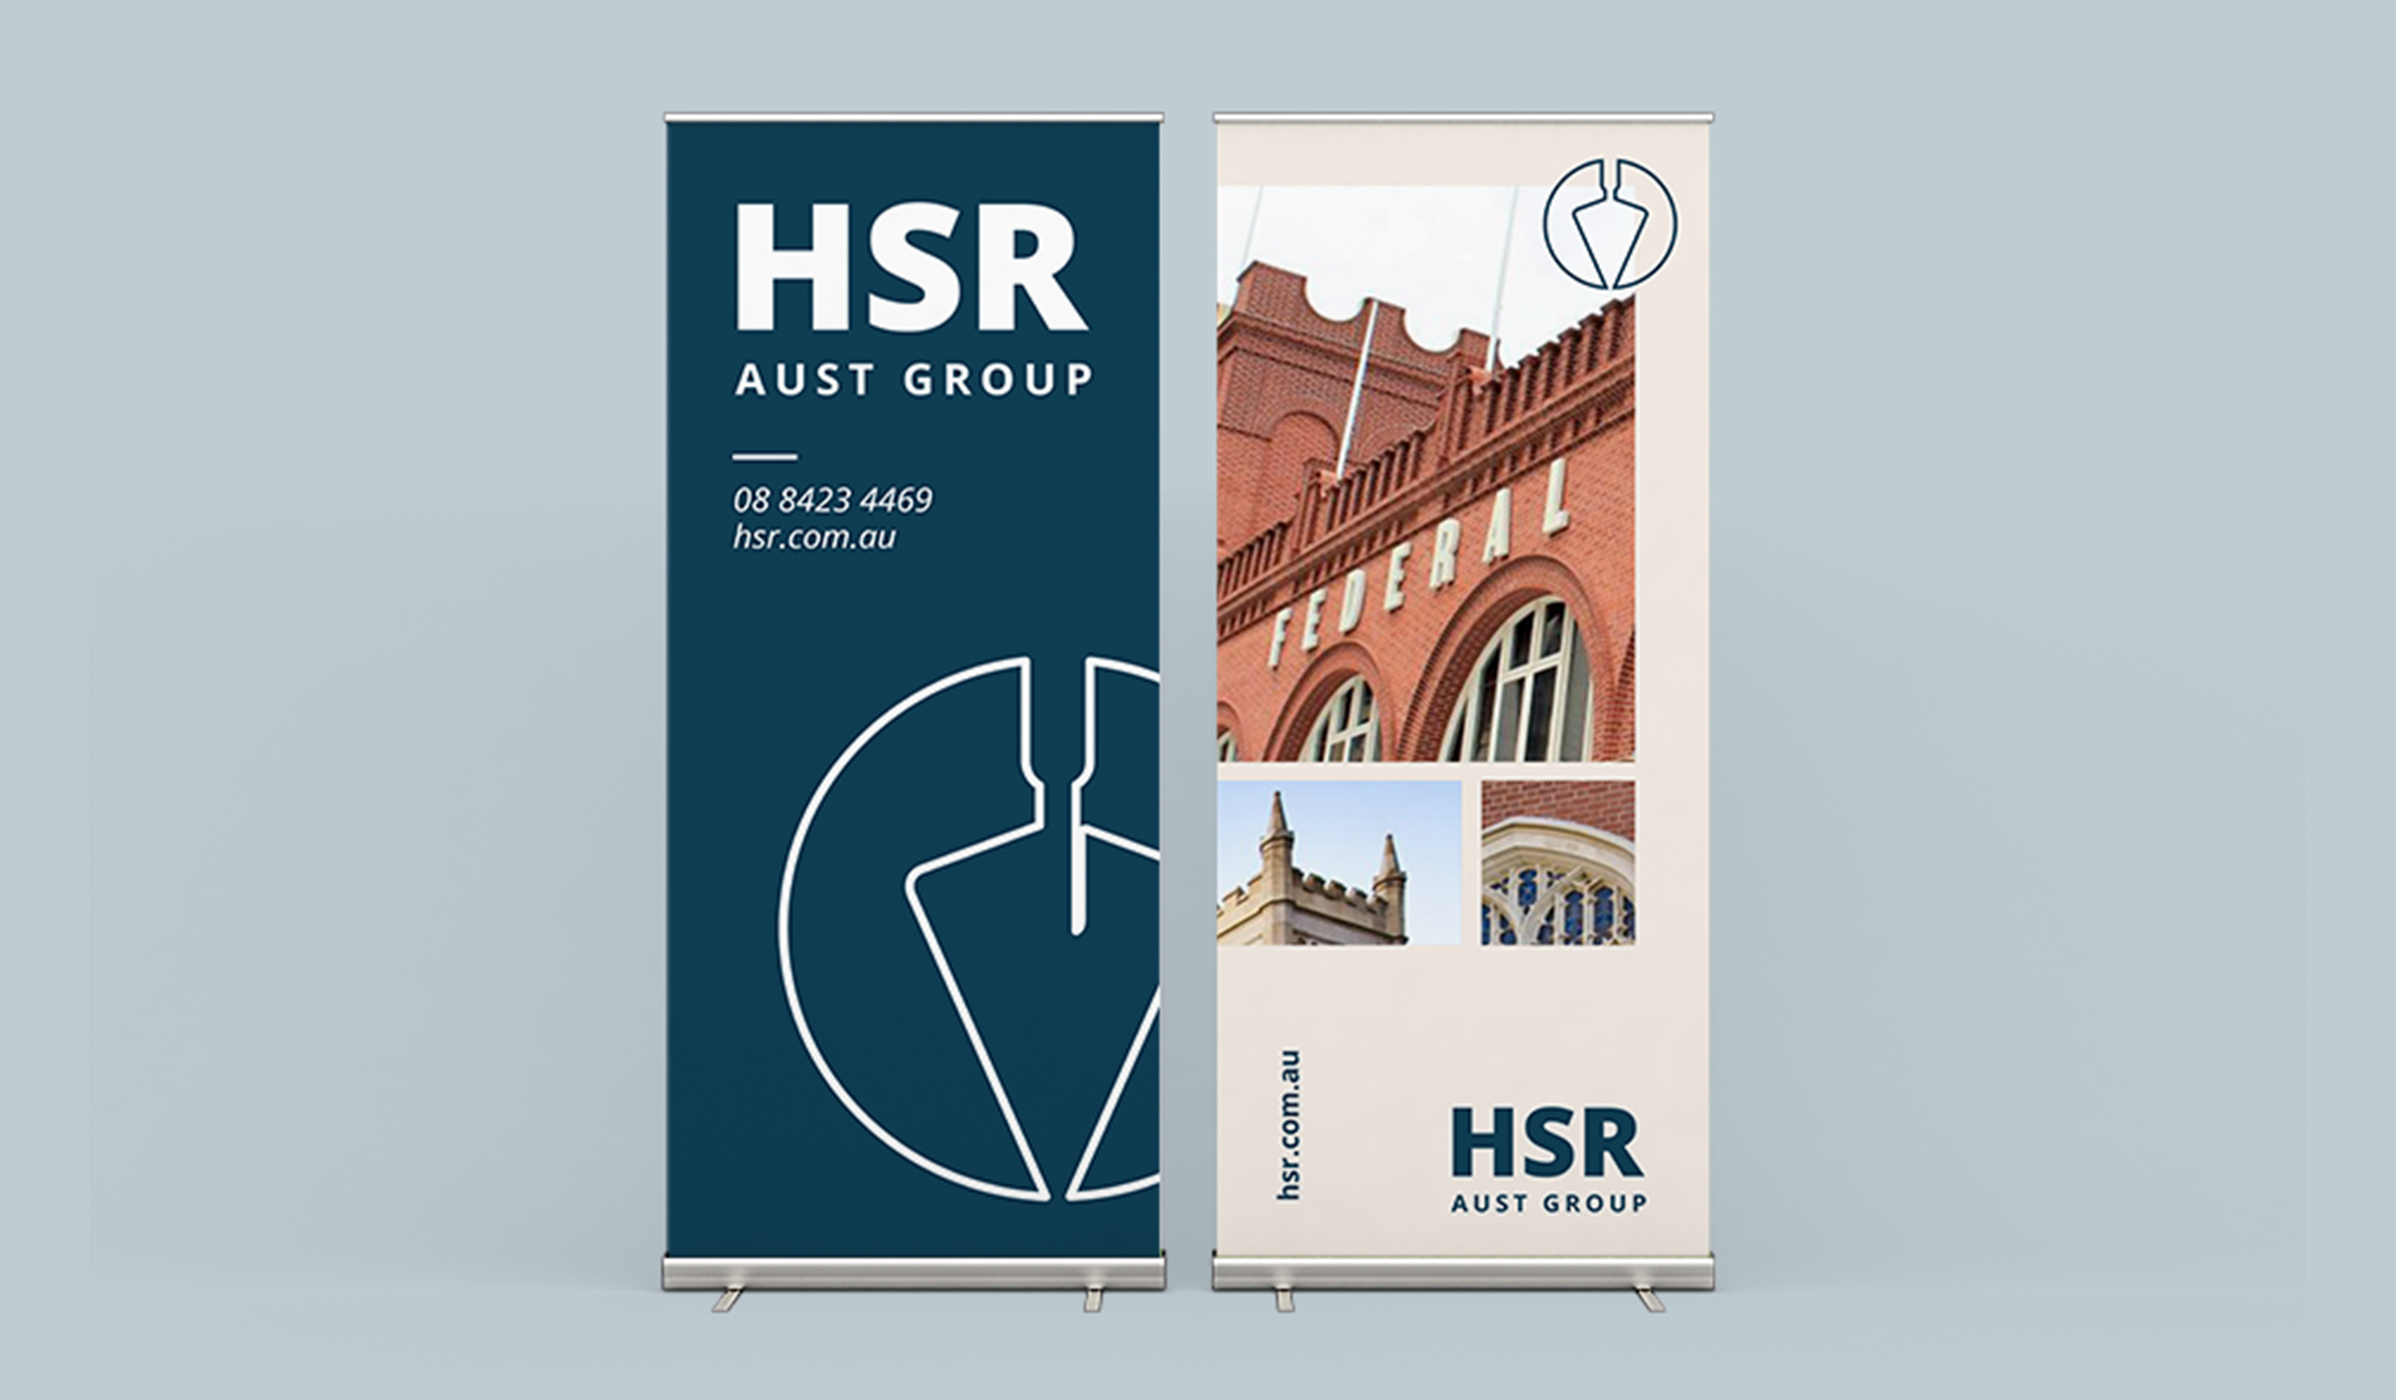 HSR pull up banner designs